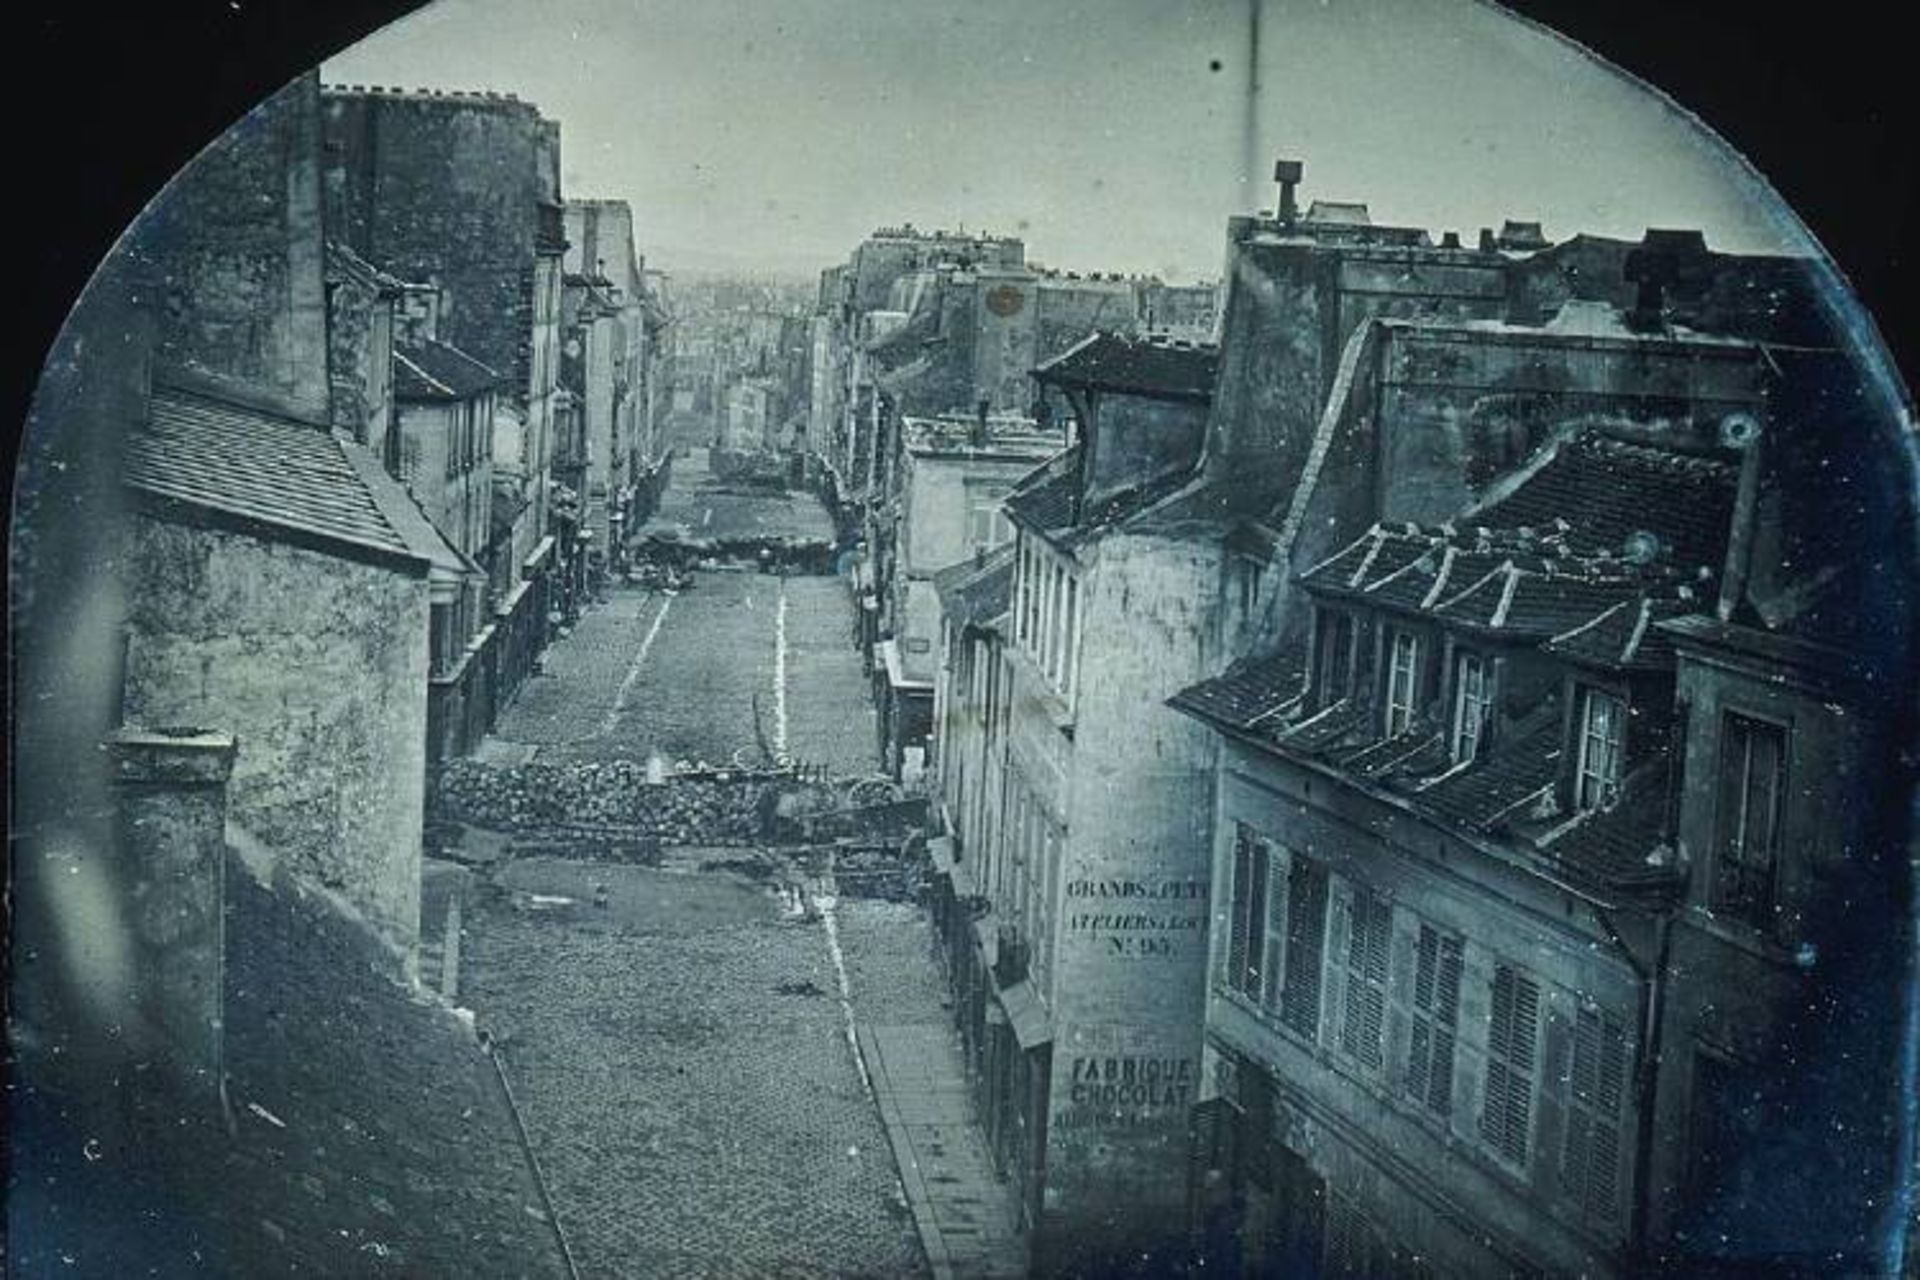 مرجع متخصصين ايران عكس معروف تاريخي با عنوان Barricades on rue Saint-Maur,